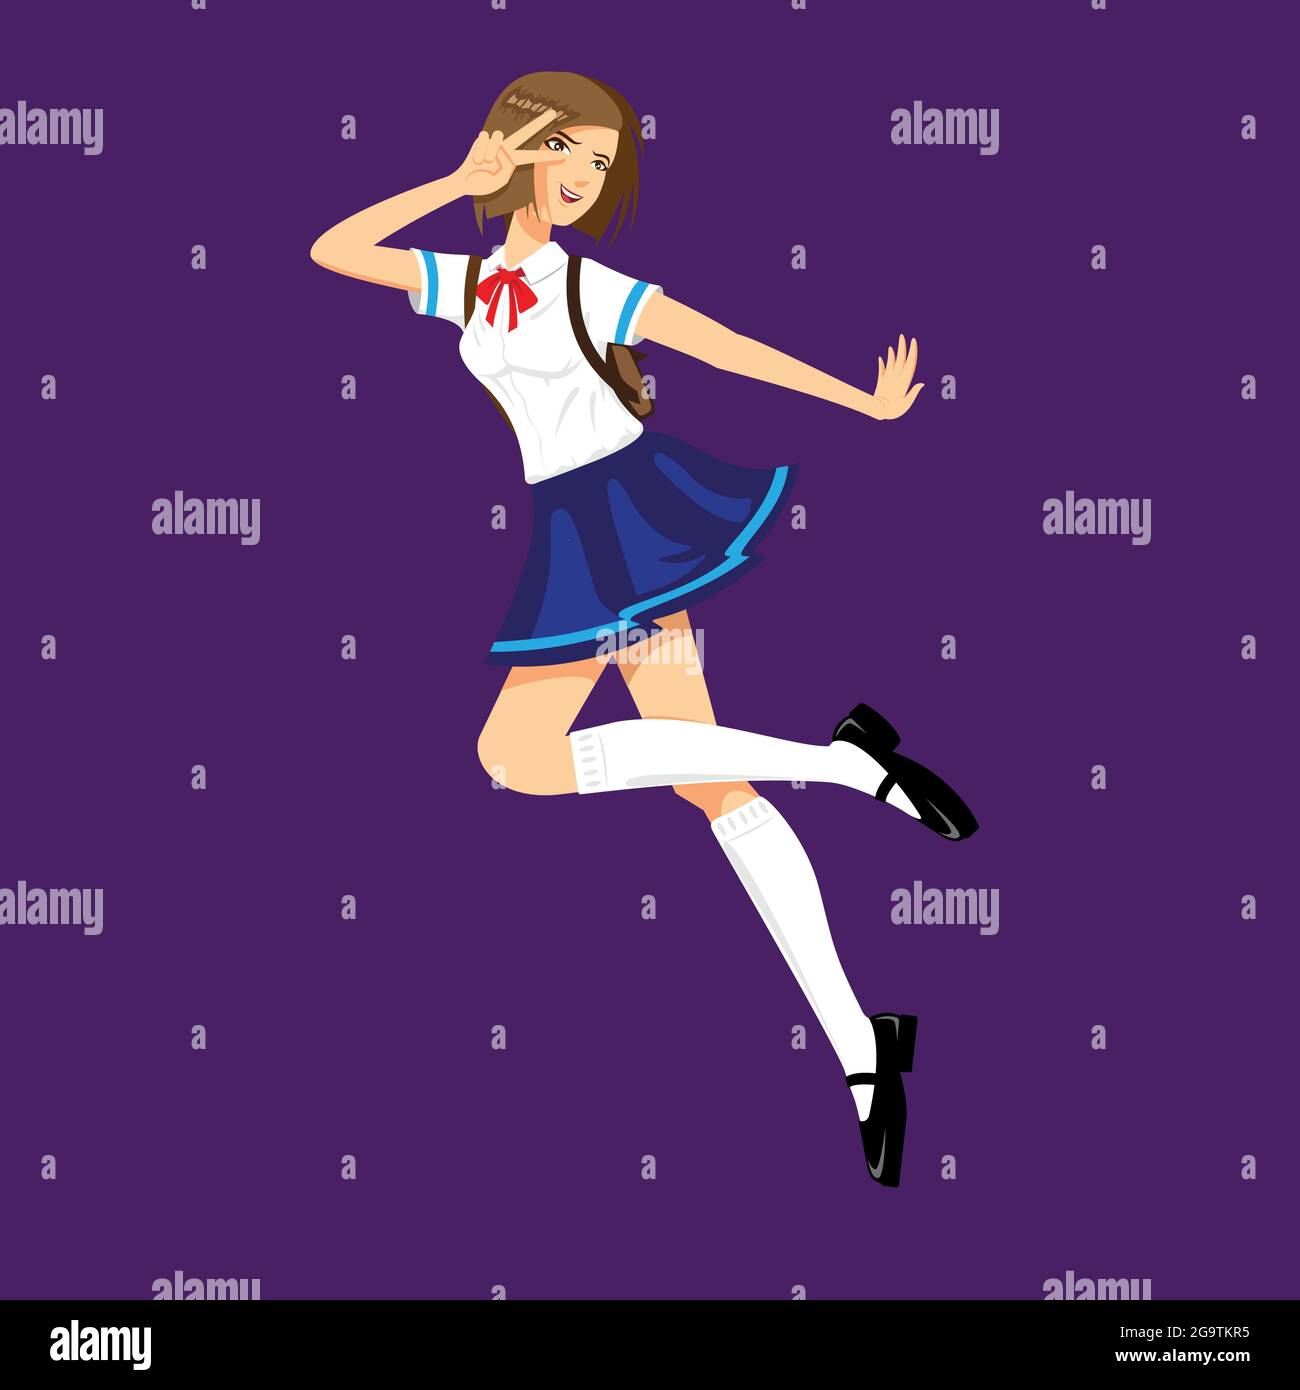 Kimono Anime Girls Stock Illustrations – 134 Kimono Anime Girls Stock  Illustrations, Vectors & Clipart - Dreamstime